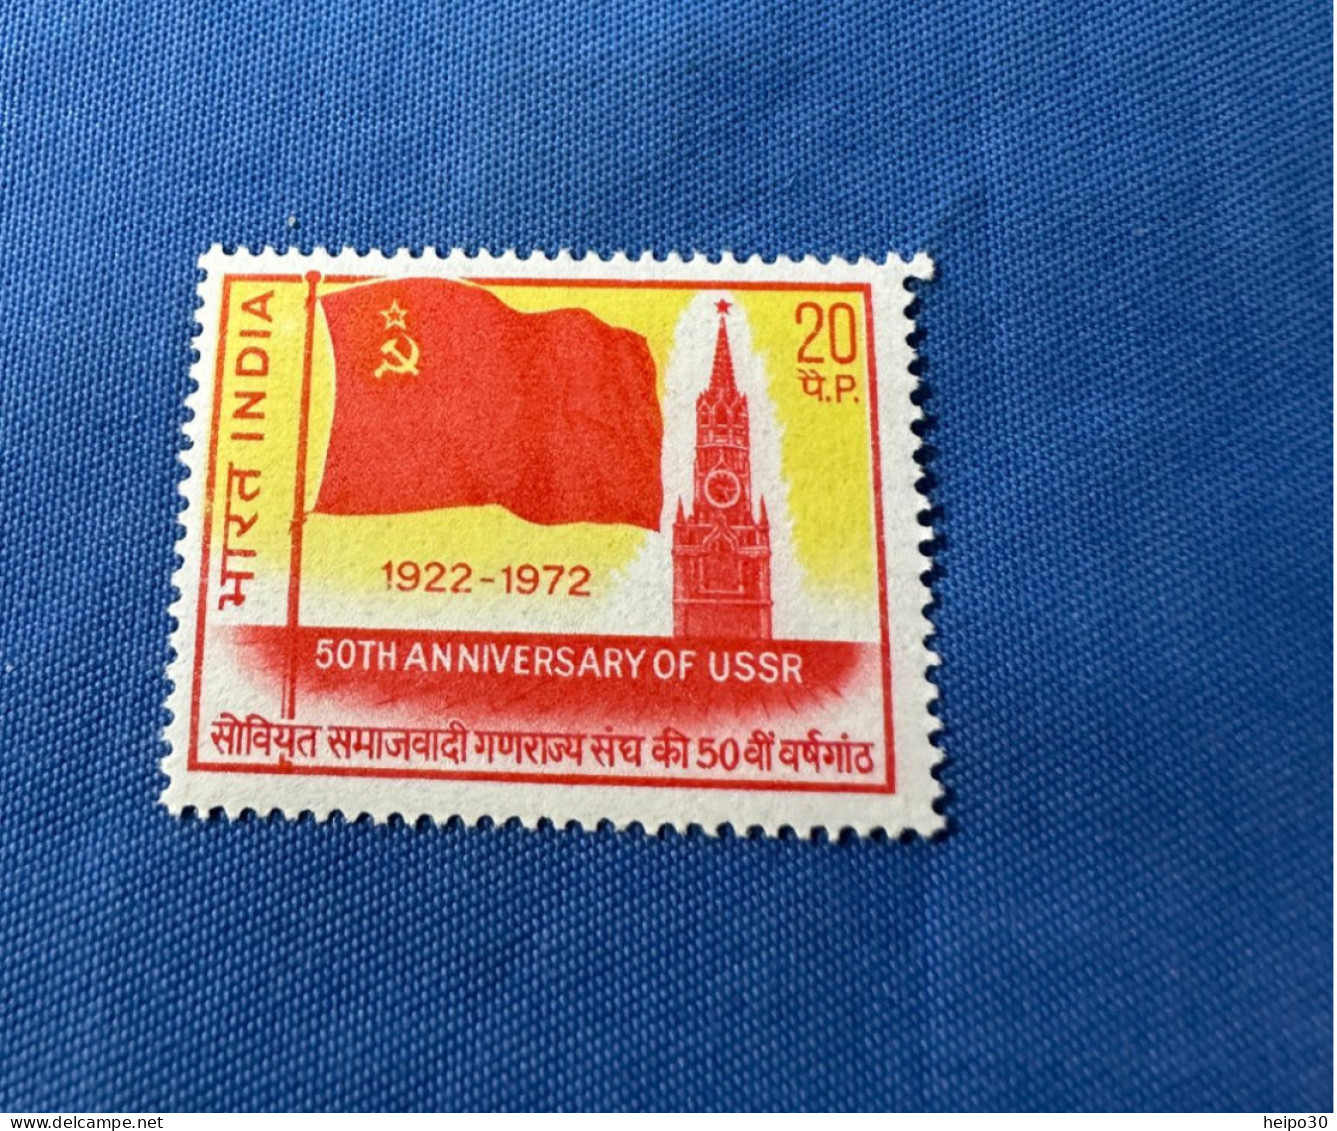 India 1972 Michel 551 UdSSR 50 Jahre MNH - Ongebruikt